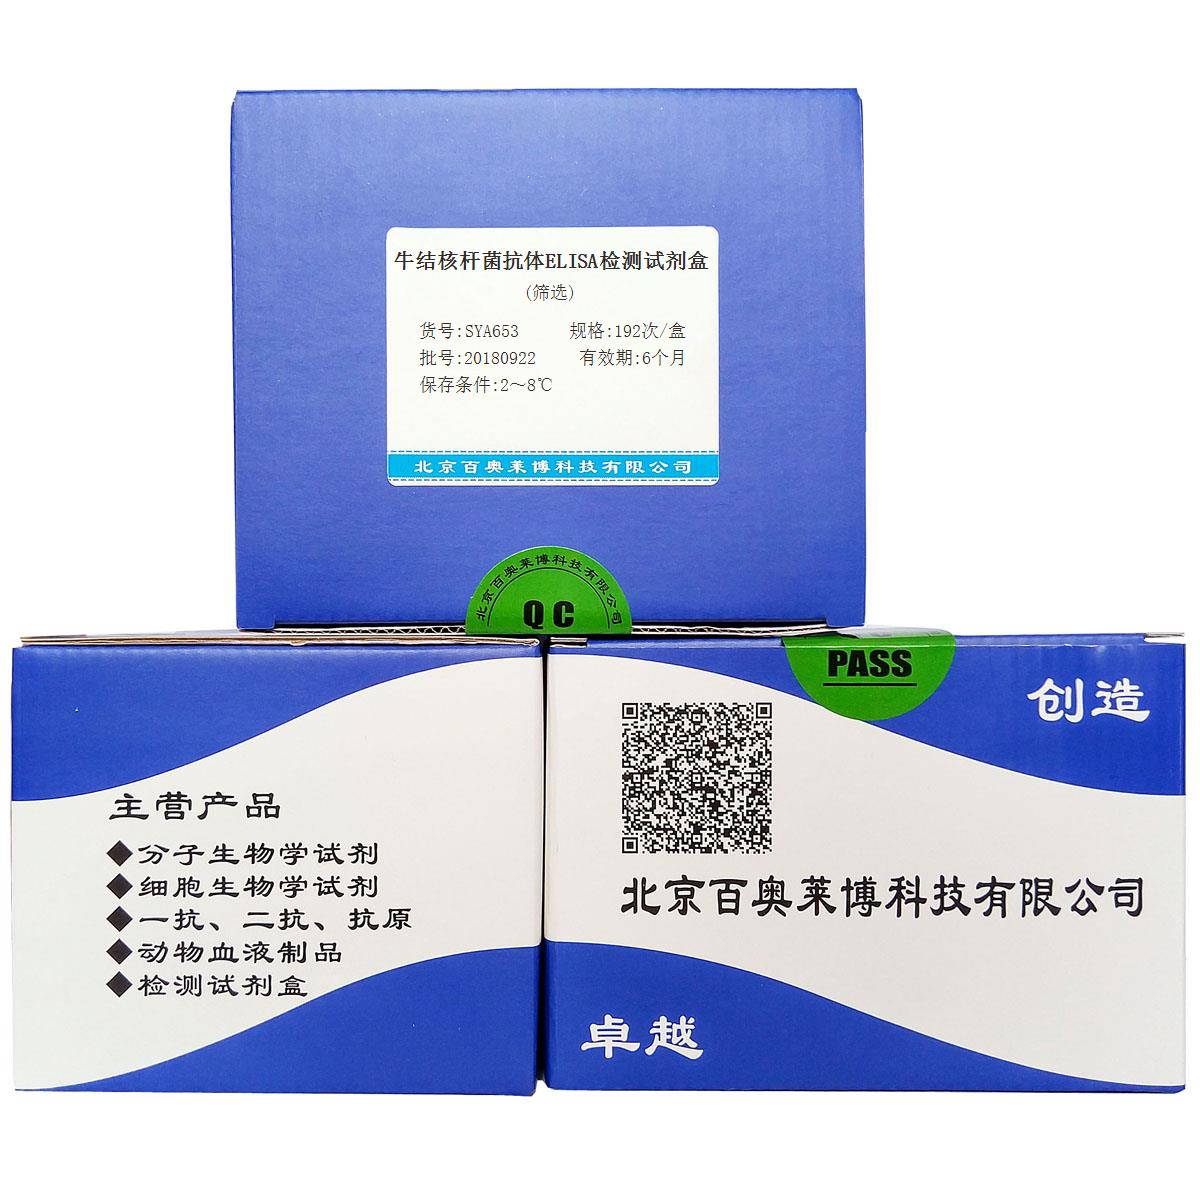 牛结核杆菌抗体ELISA检测试剂盒(筛选)